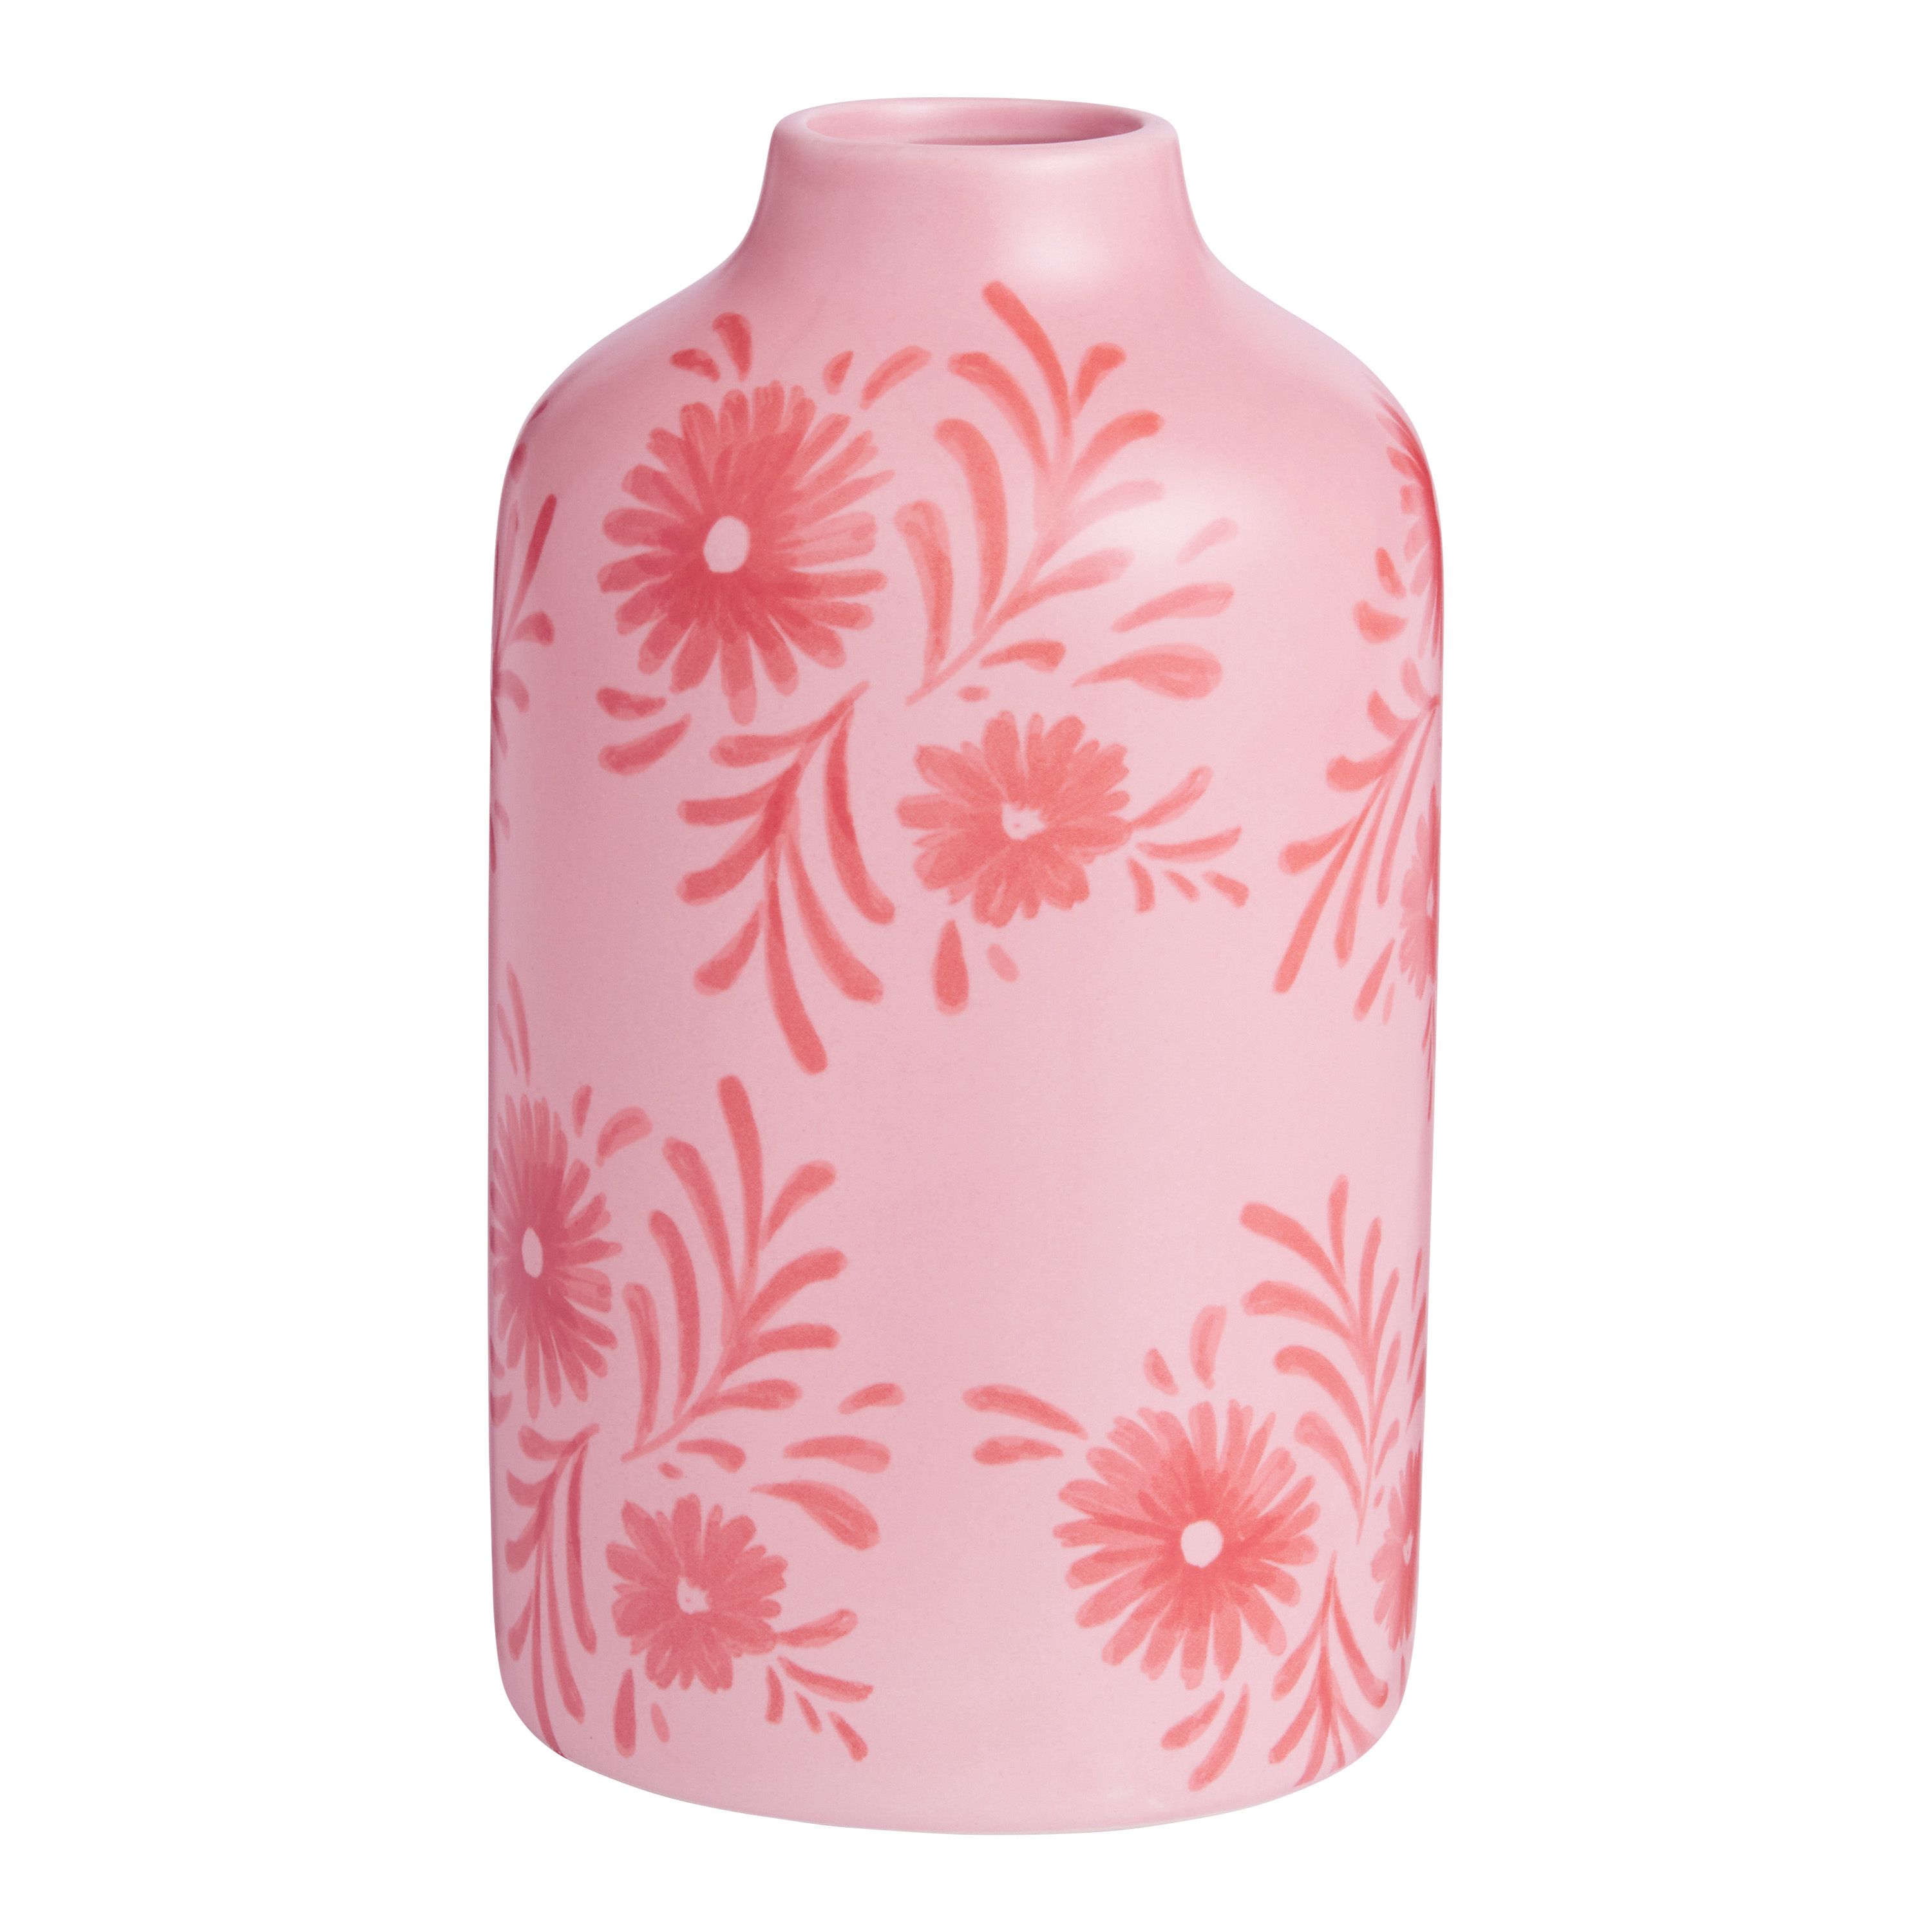 Blush Pink and Red Ceramic Floral Vase | World Market